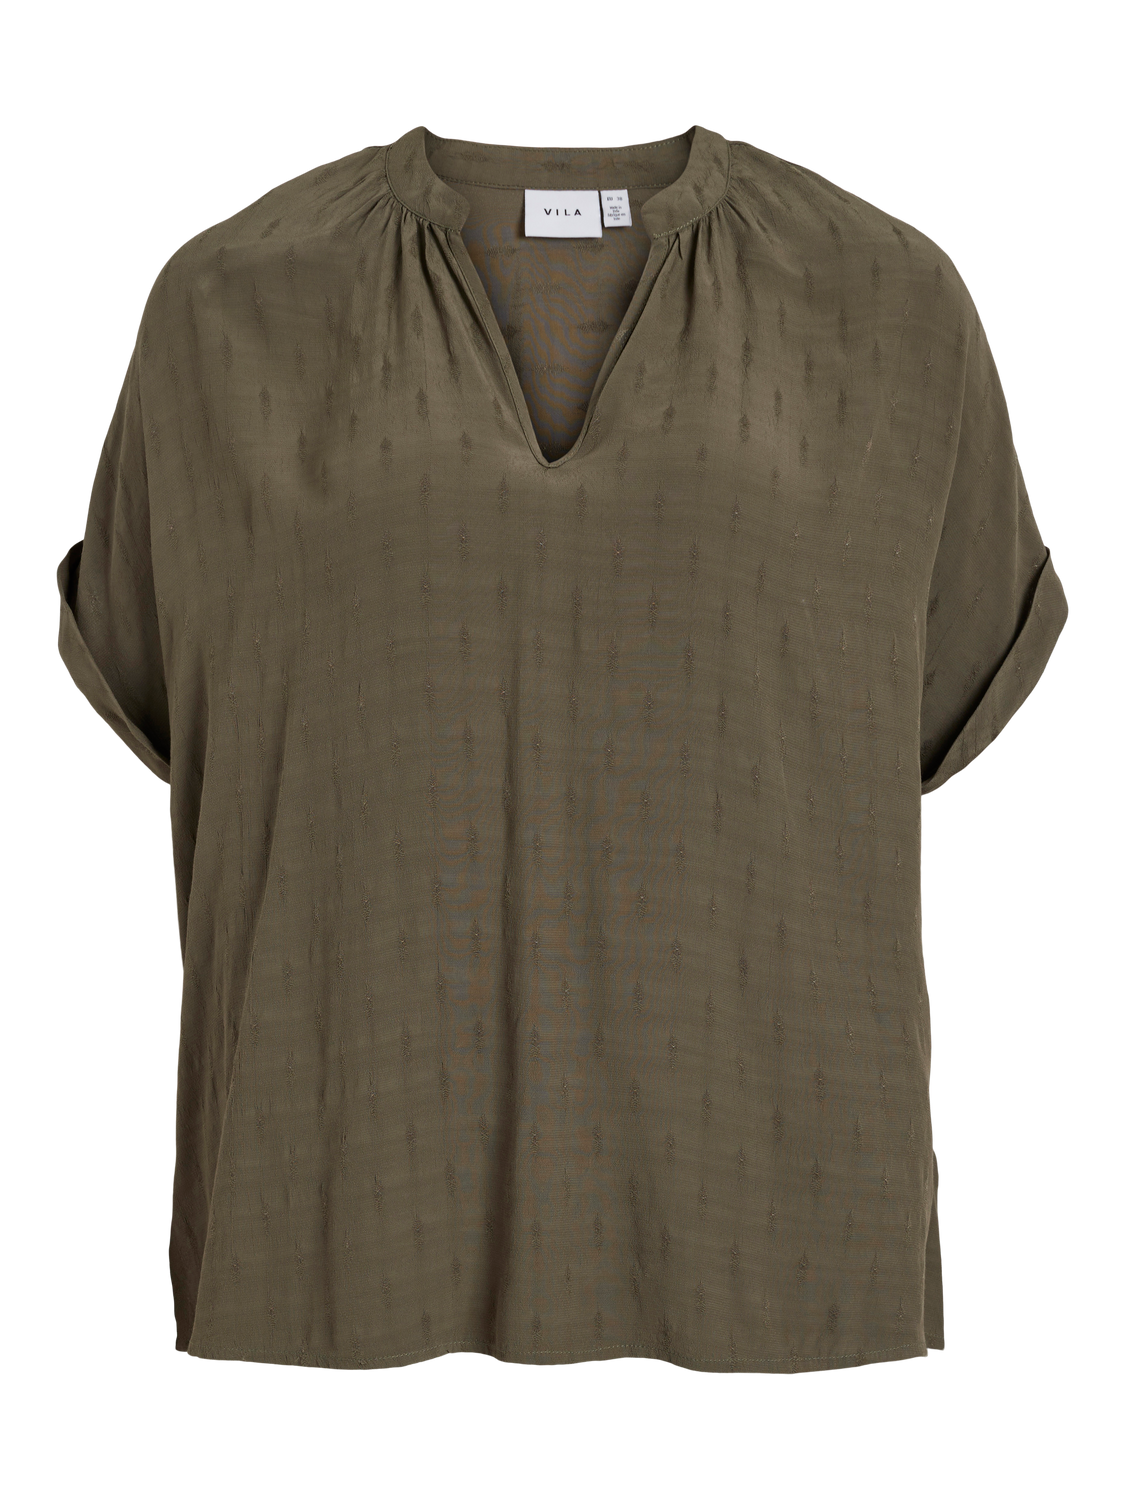 VIYARINA T-Shirts & Tops - Dusty Olive